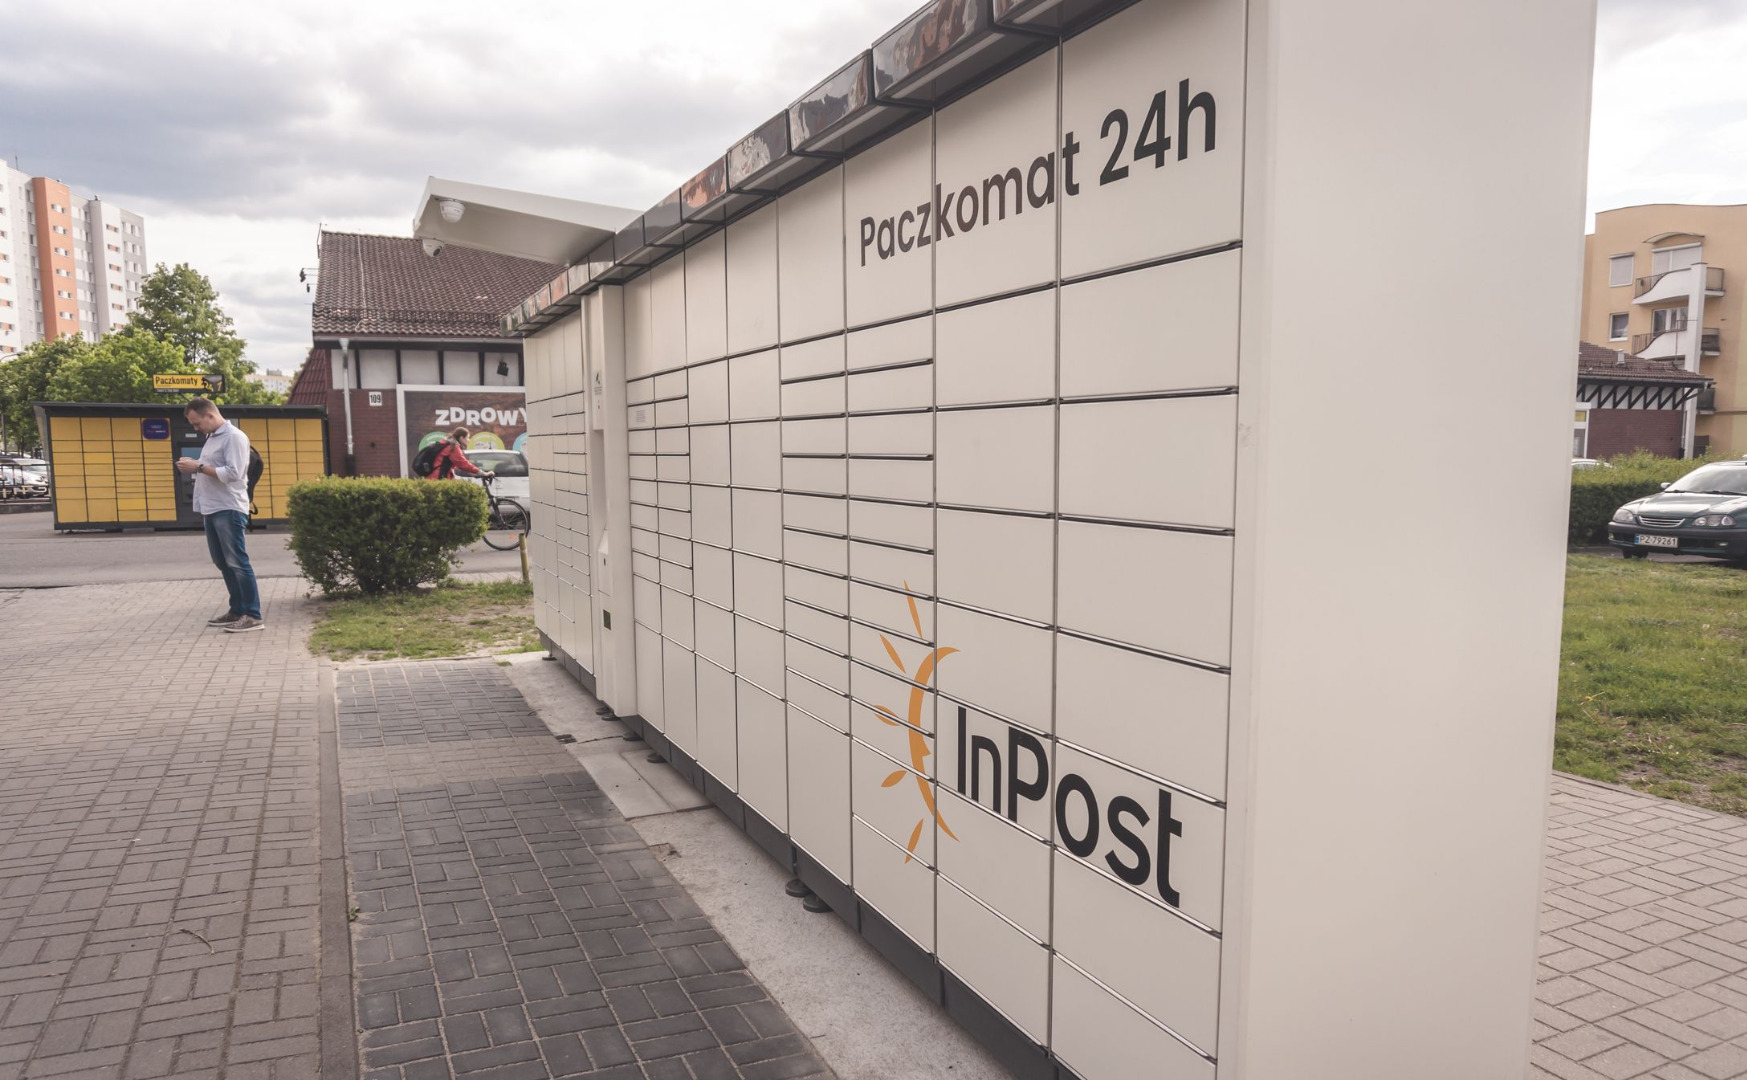 Trwa spór między Pocztą Polską a InPost o nazwę Paczkomat - Forsal.pl